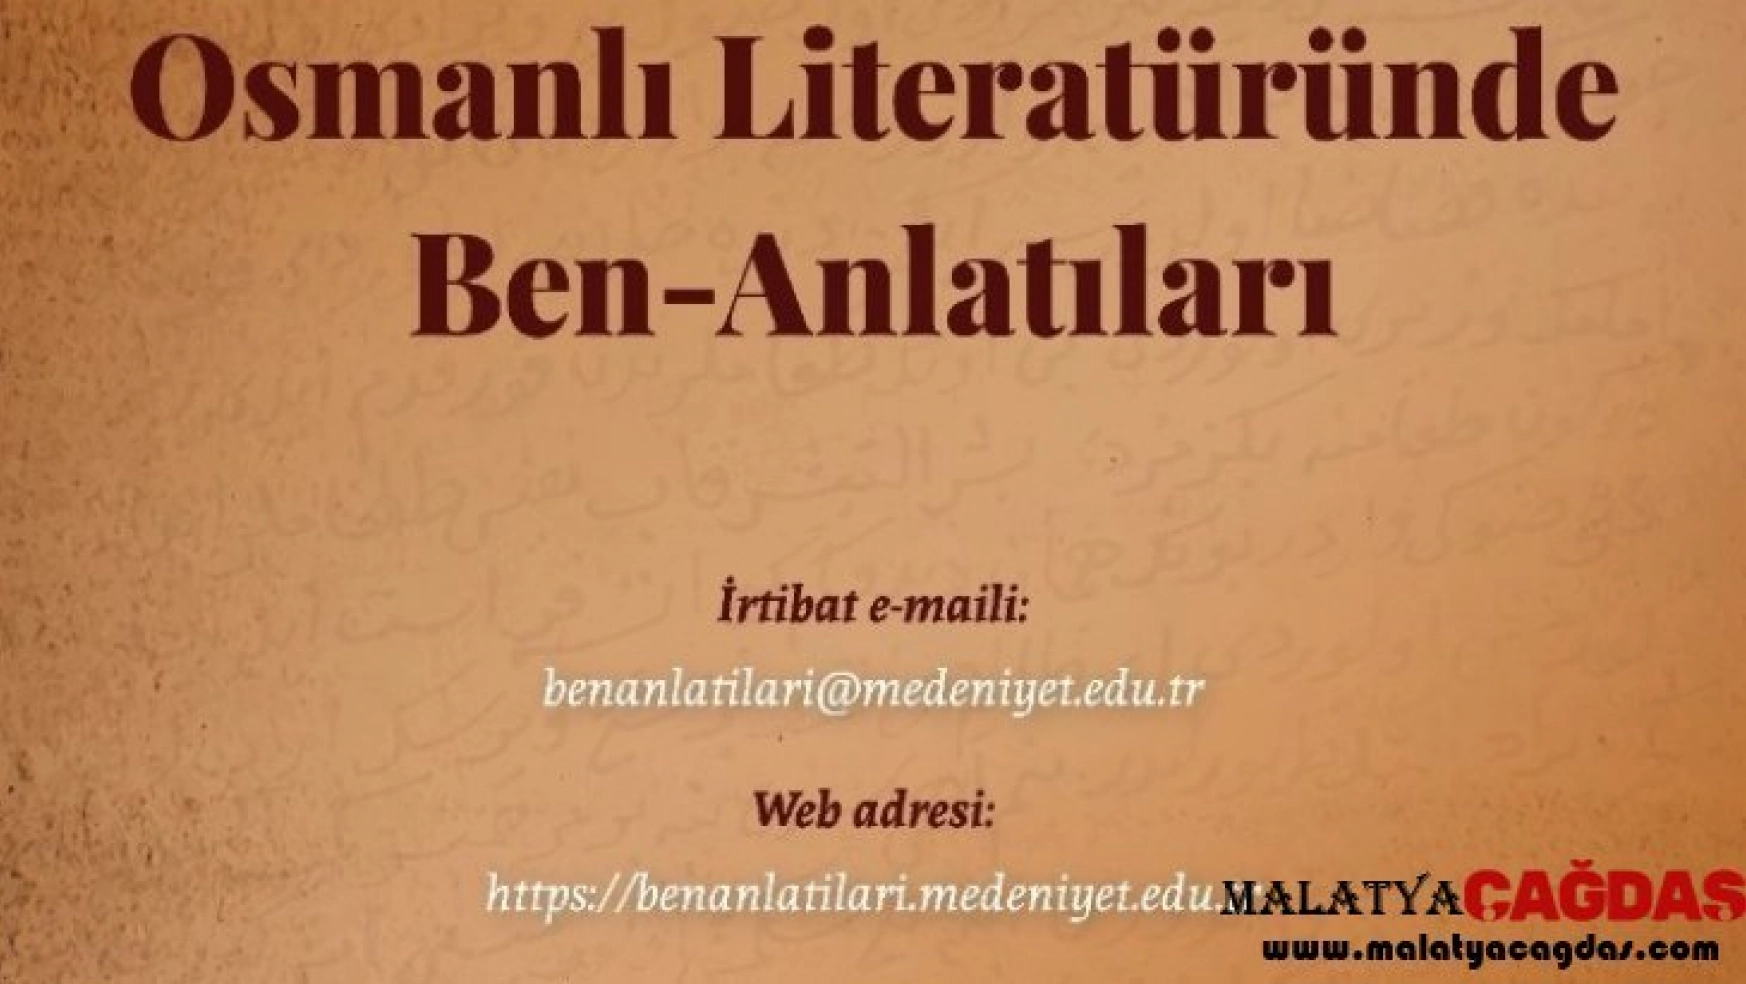 Osmanlı Literatüründe Ben-Anlatıları Çalıştayı düzenlenecek